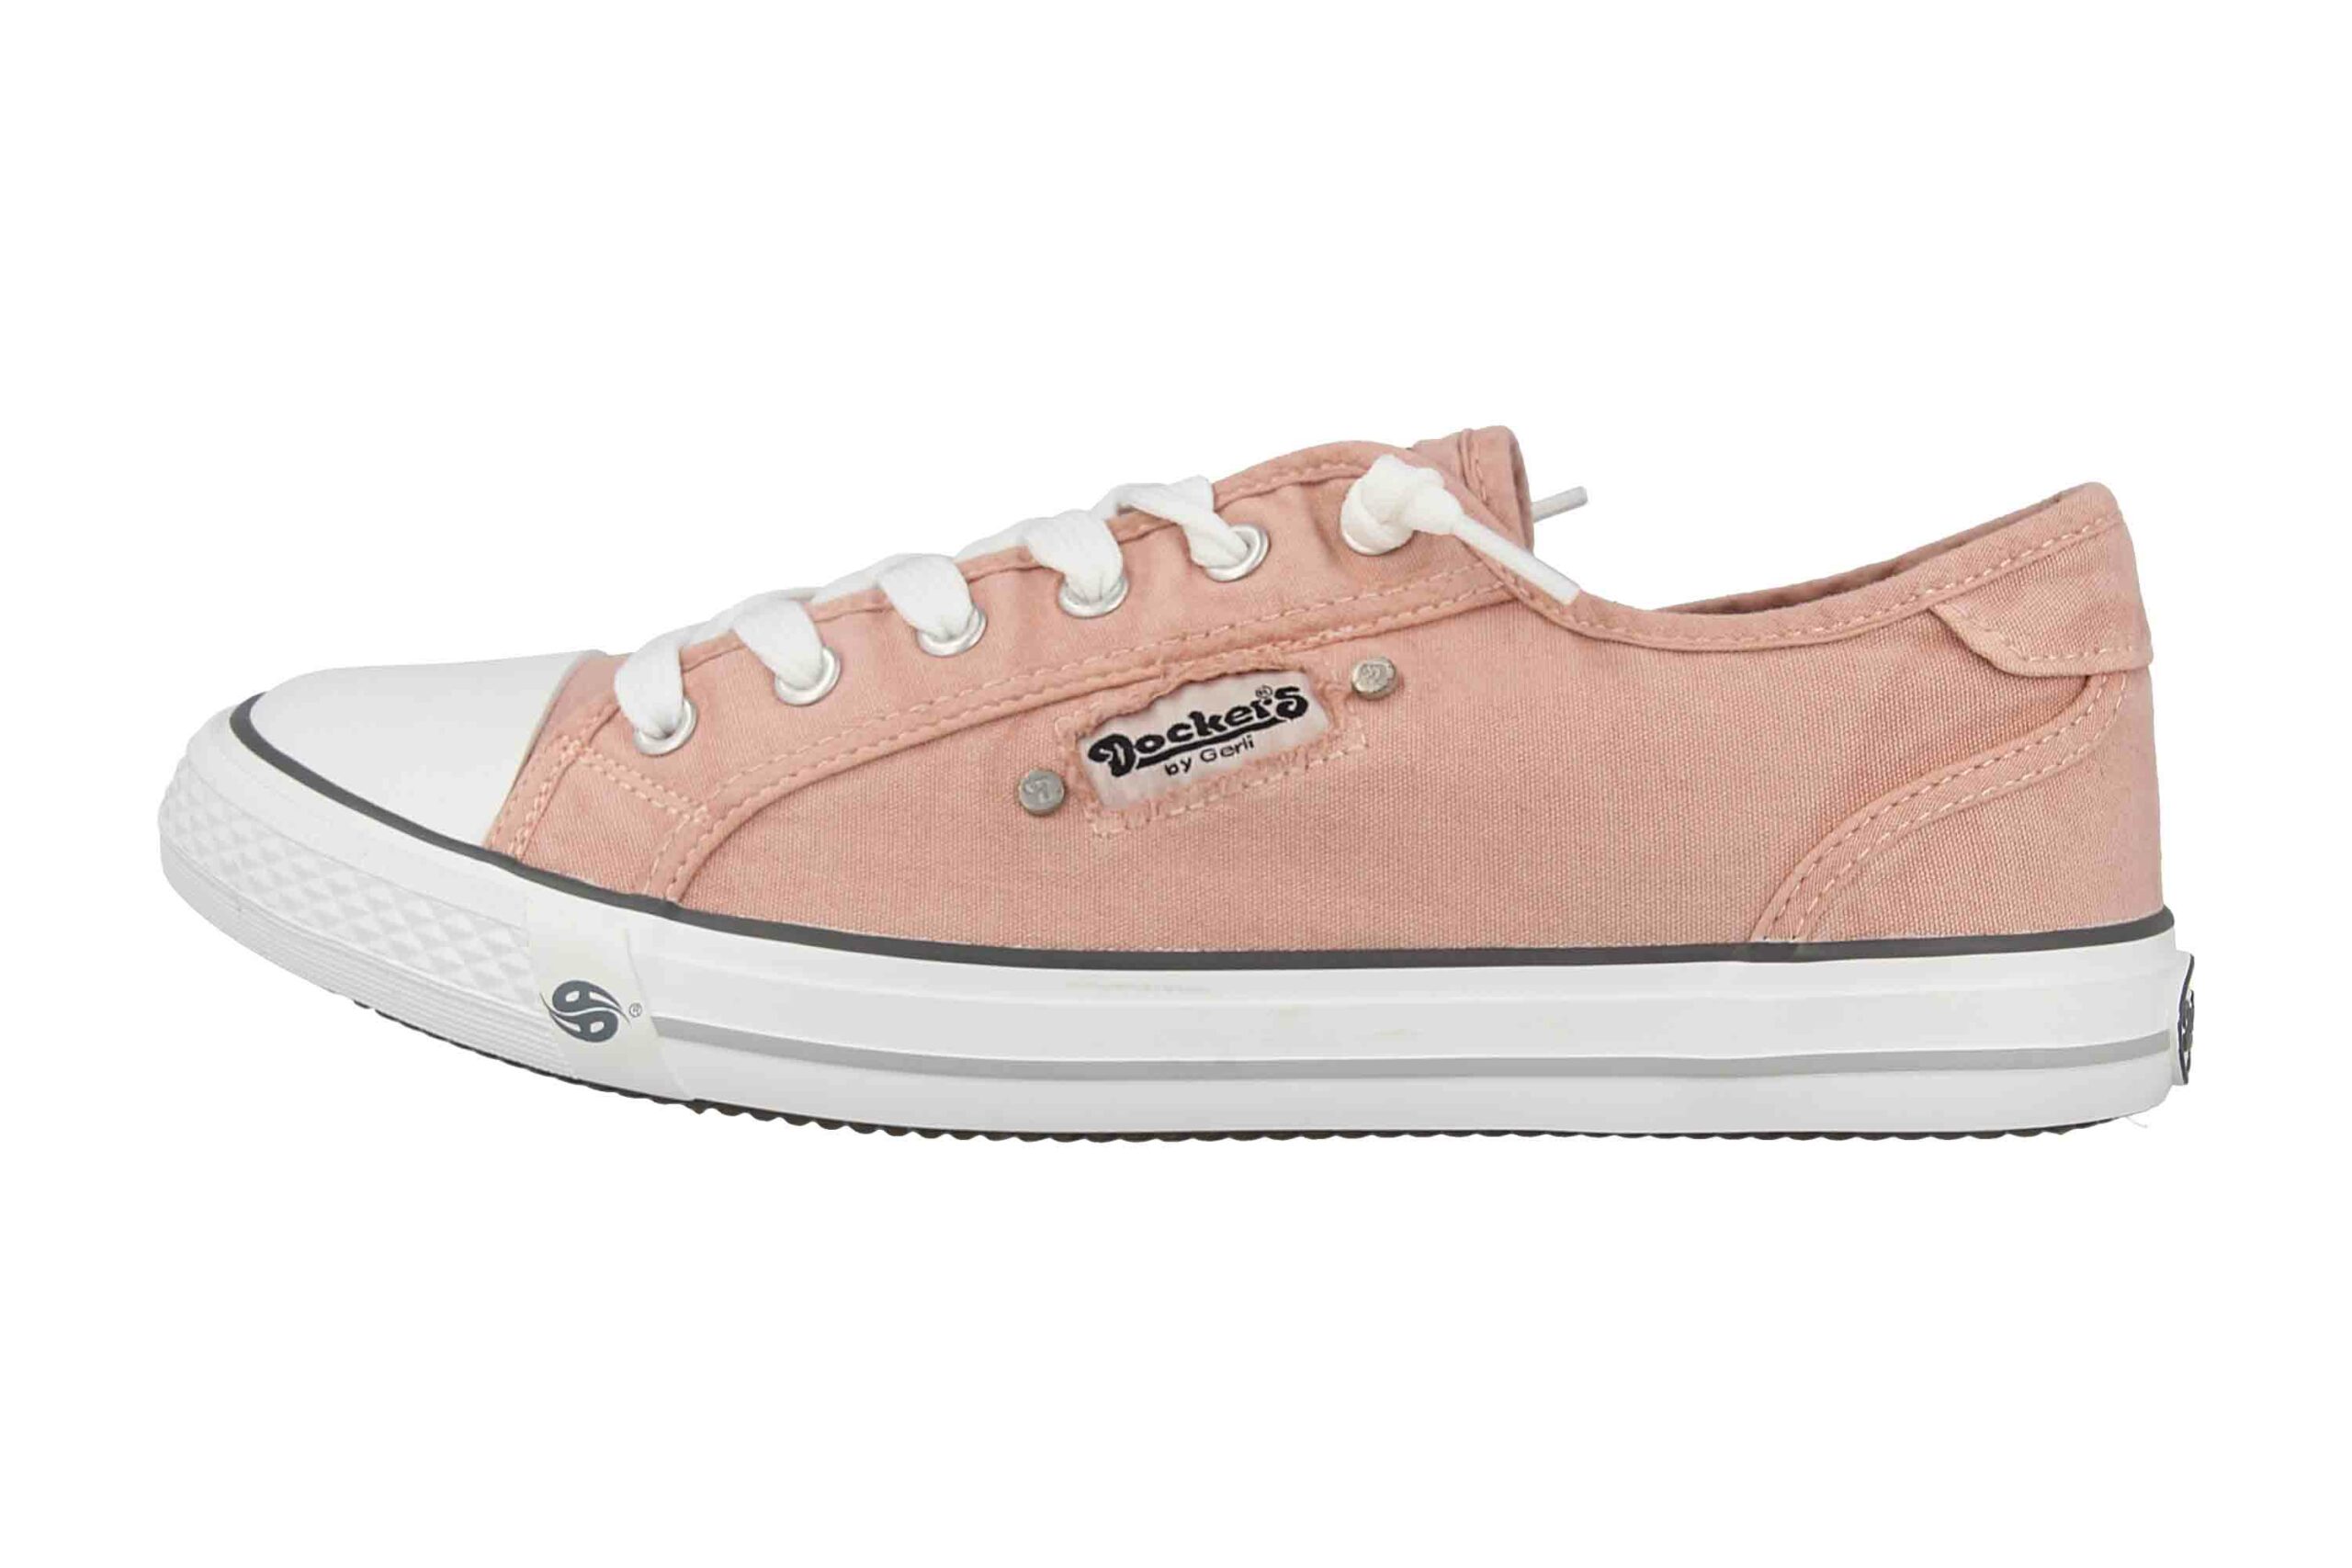 Dockers Sneaker in Übergrößen Pink 42VE201-790770 große Damenschuhe